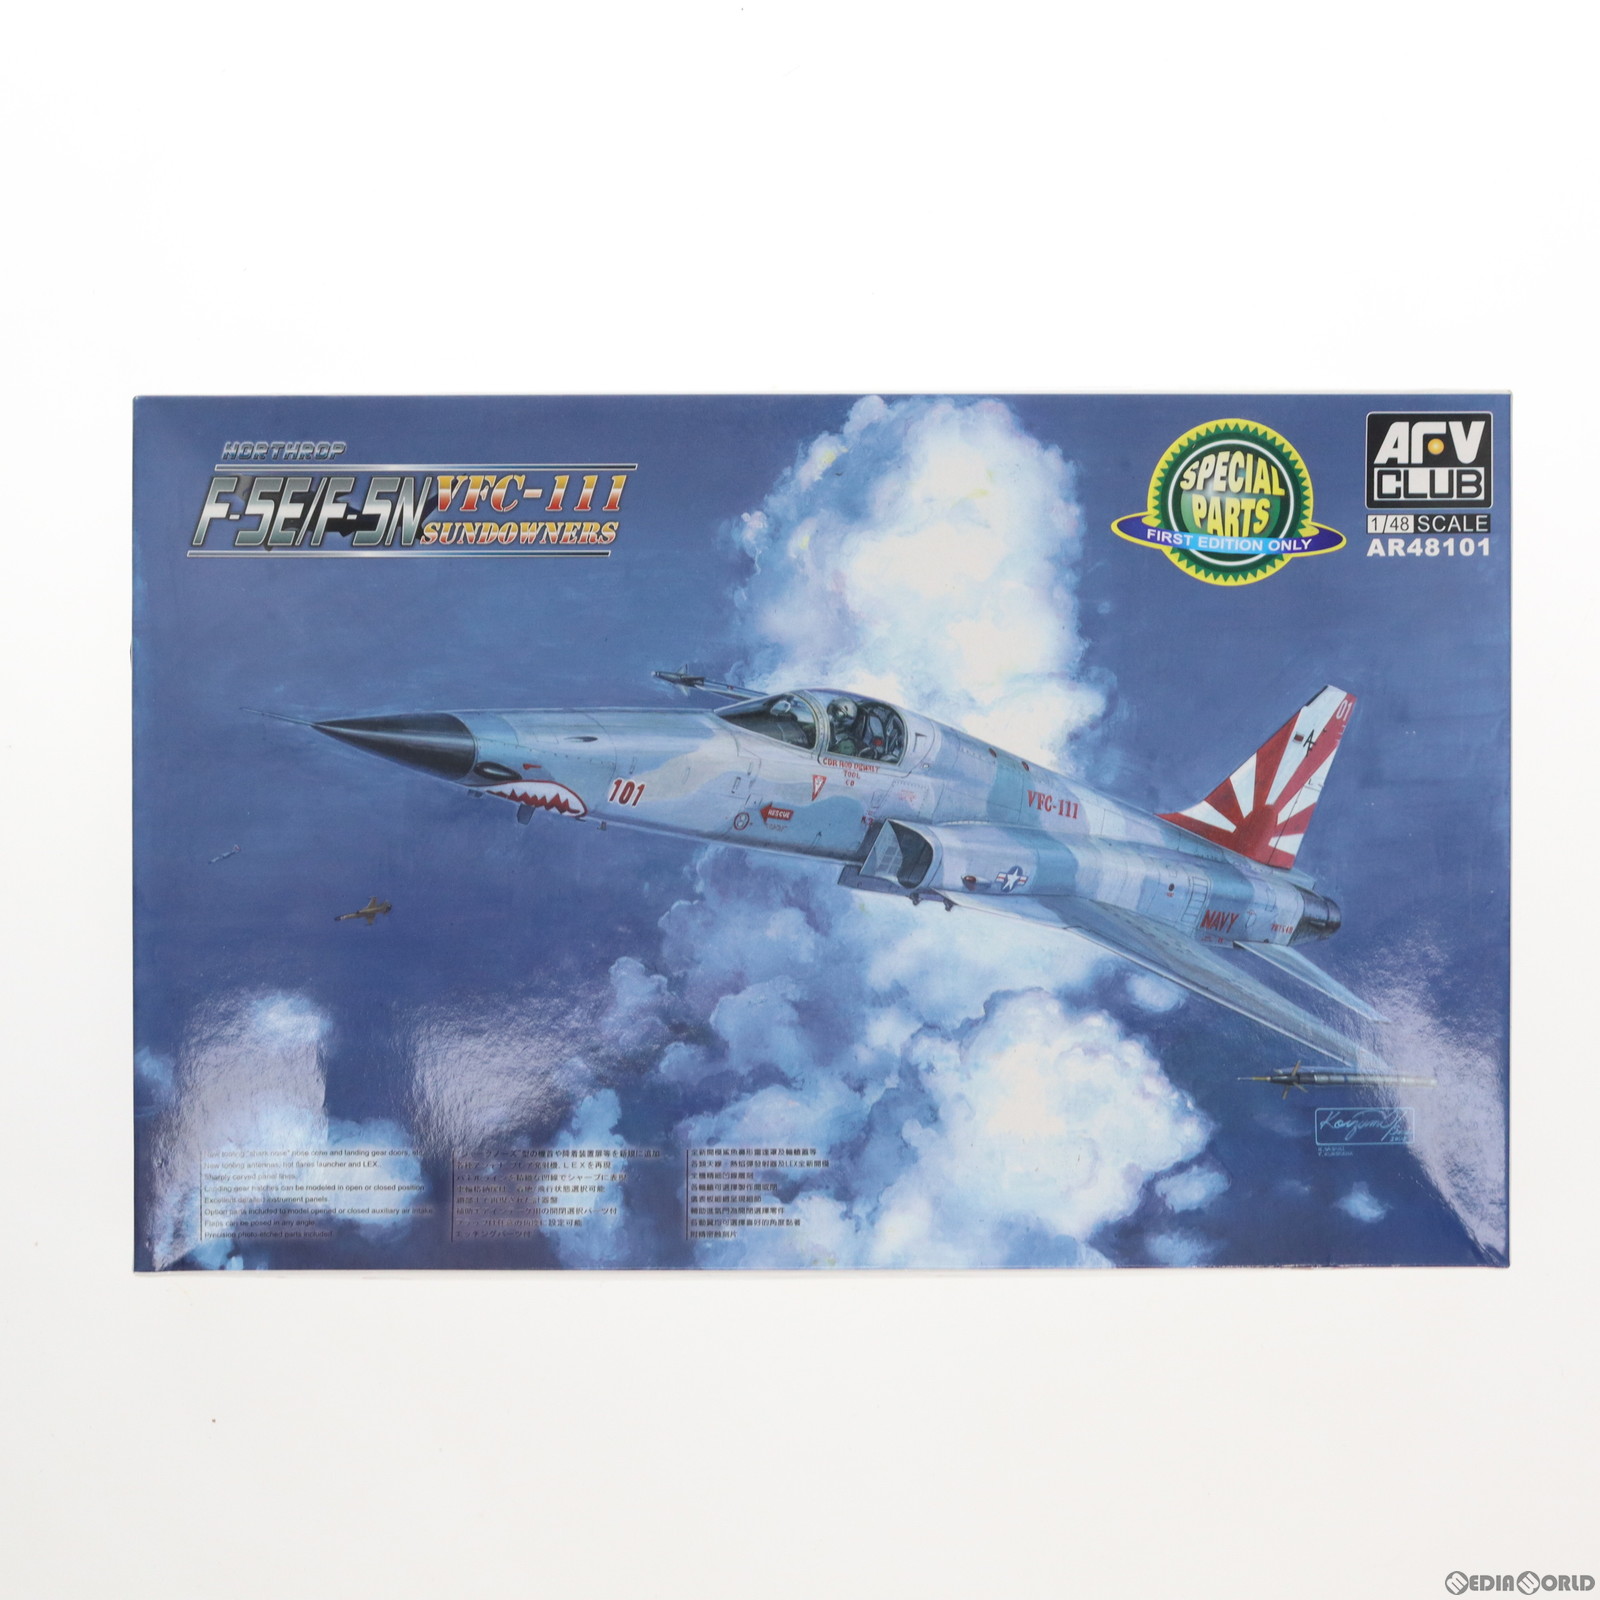 【中古即納】[PTM]クリアファイル付属 1/48 F-5EタイガーII シャークノーズ プラモデル(AR48101) AFVクラブ(20200916)